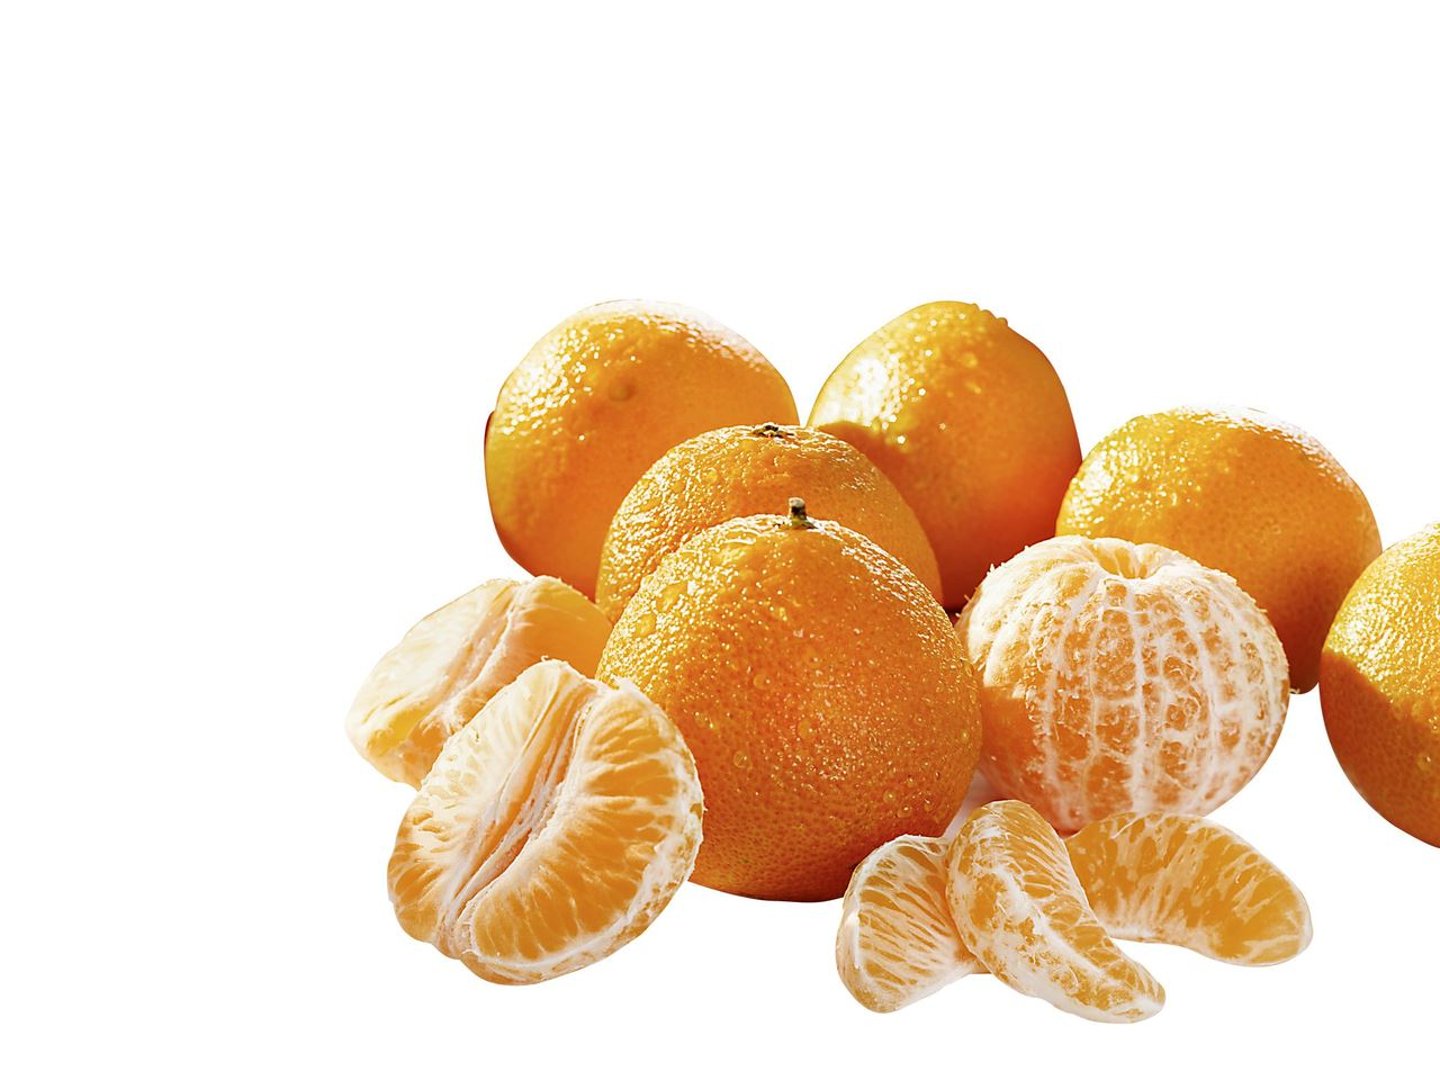 BIO Mandarinen - Griechenland - 500 g Netz